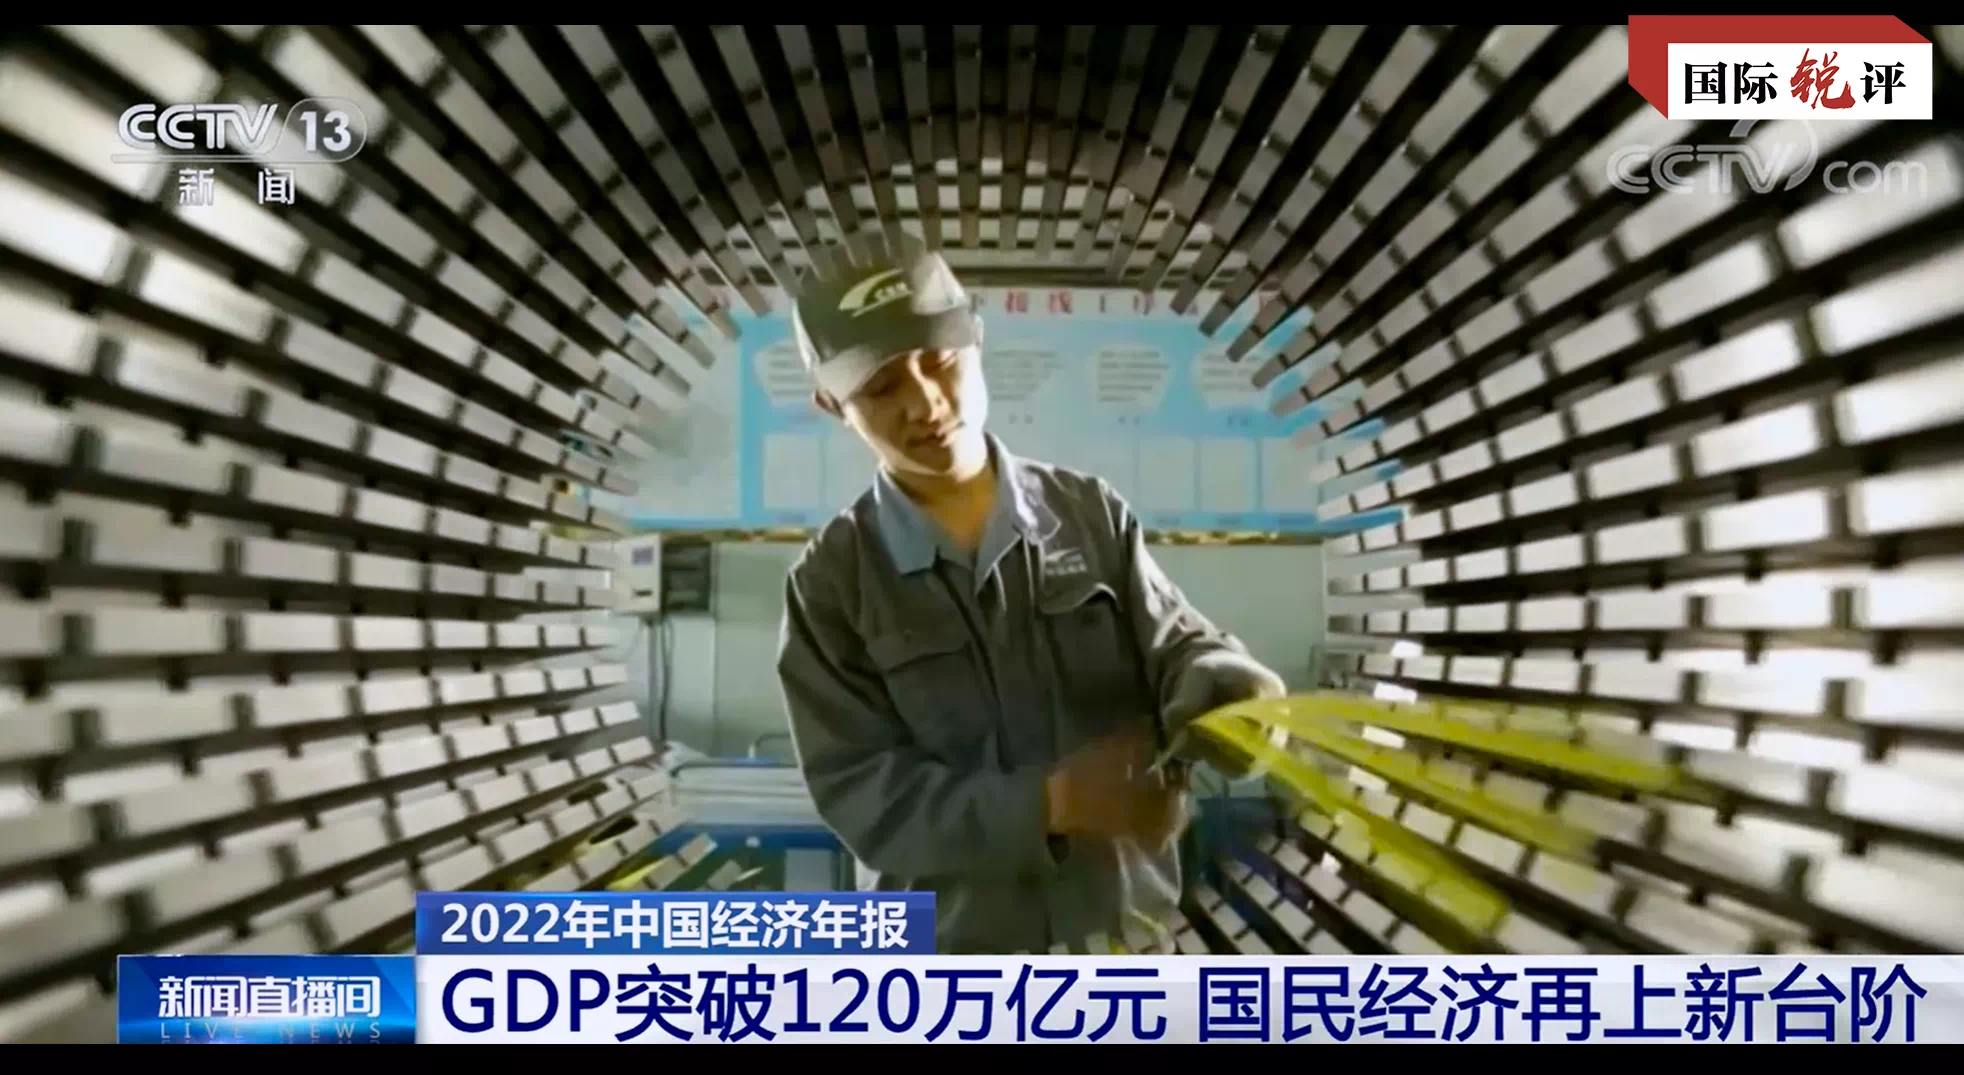 विश्वमा जीडीपीको मात्रा सबैभन्दा बढी भएको मुलुक निरन्तर रुपमा चीन